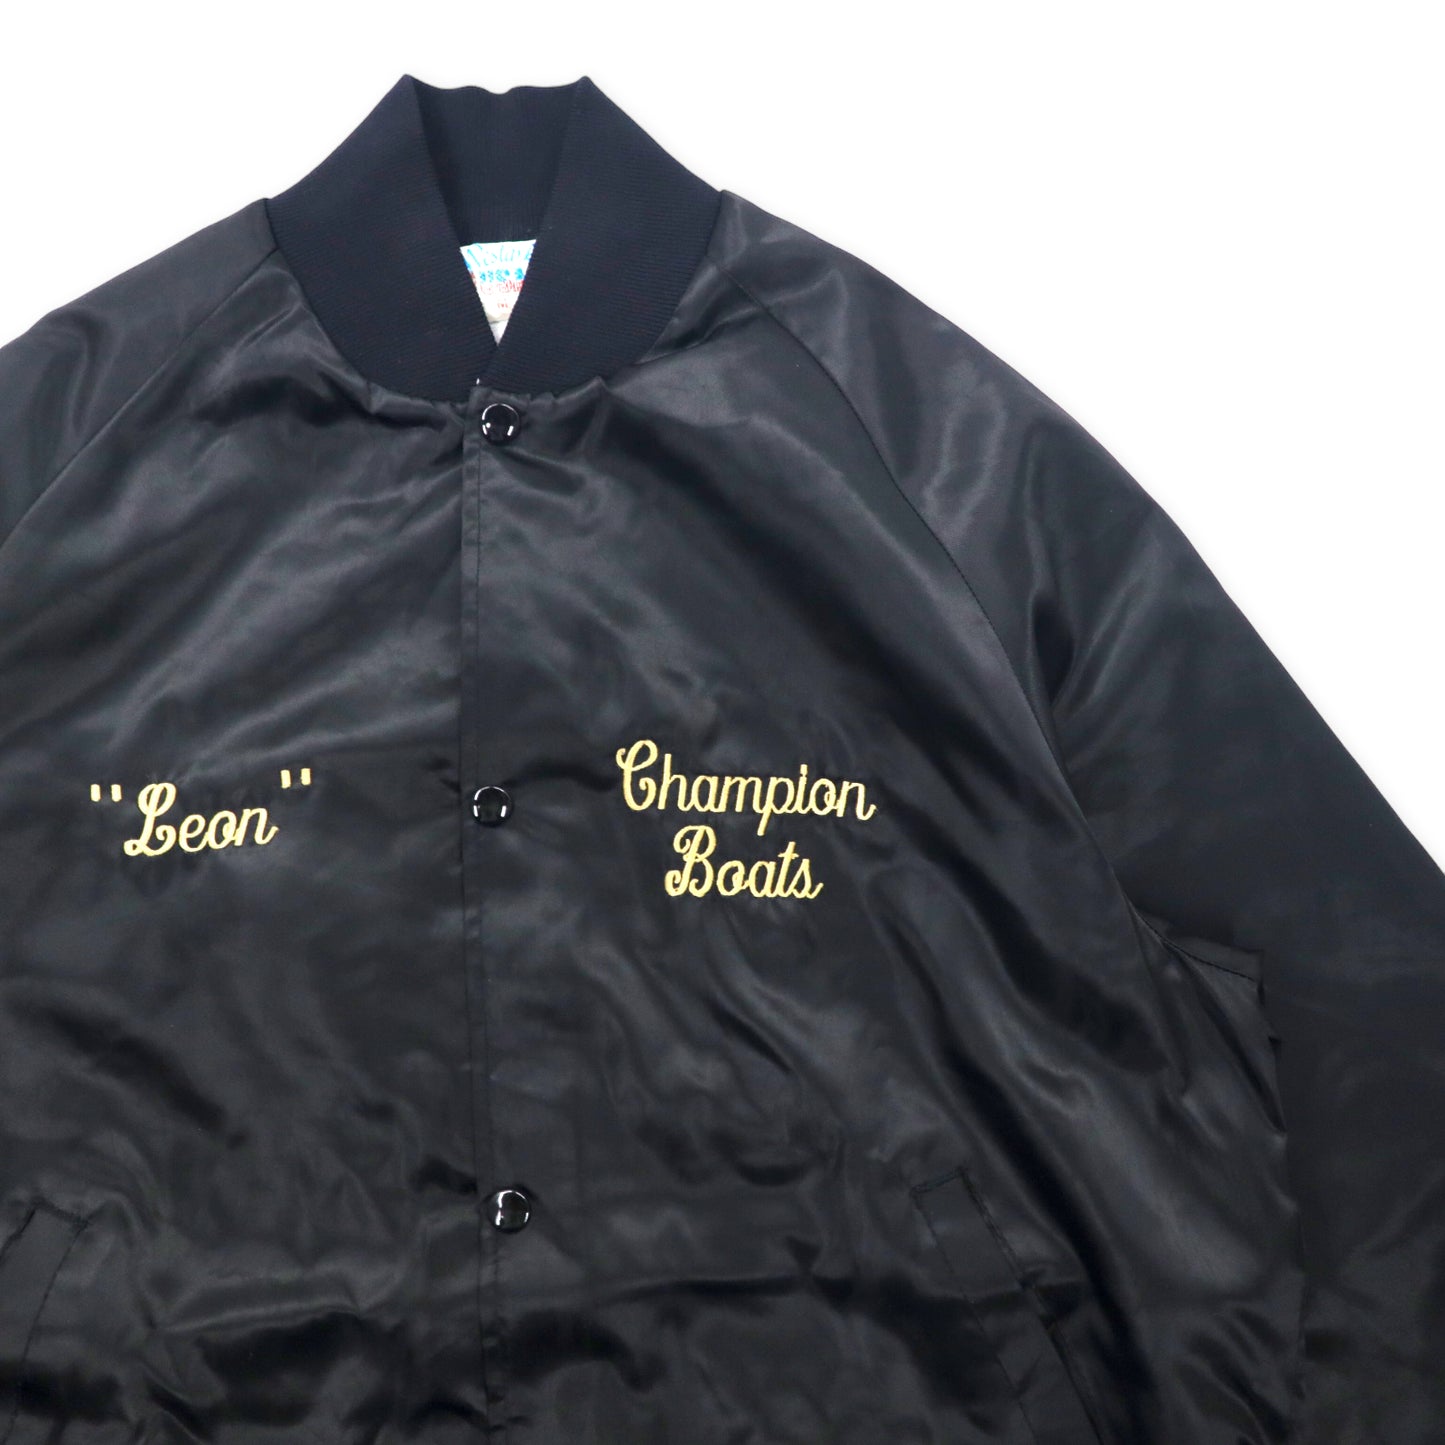 WESTARK USA MADE 90s Nylon Varsity Jacket M Black Champion Beats 